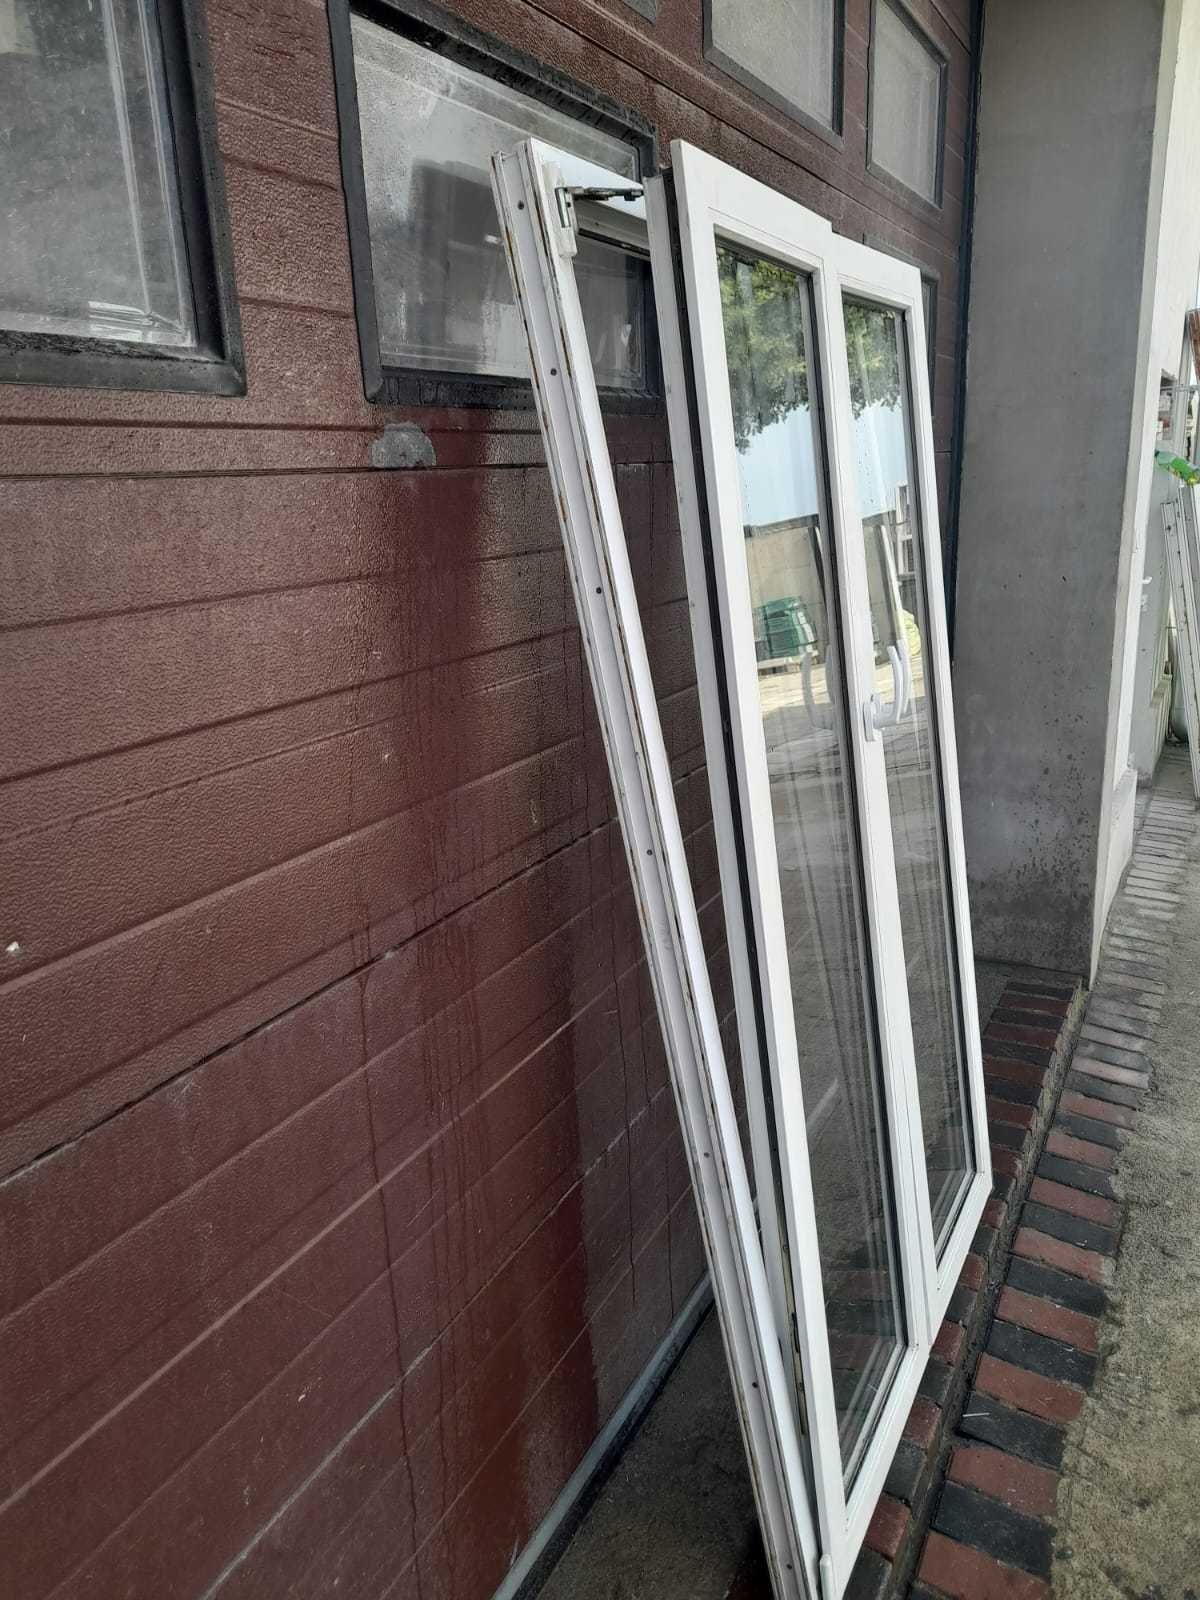 Drzwi tarasowe wąskie 115x194 okna pcv plastikowe DOWÓZ CAŁY KRAJ